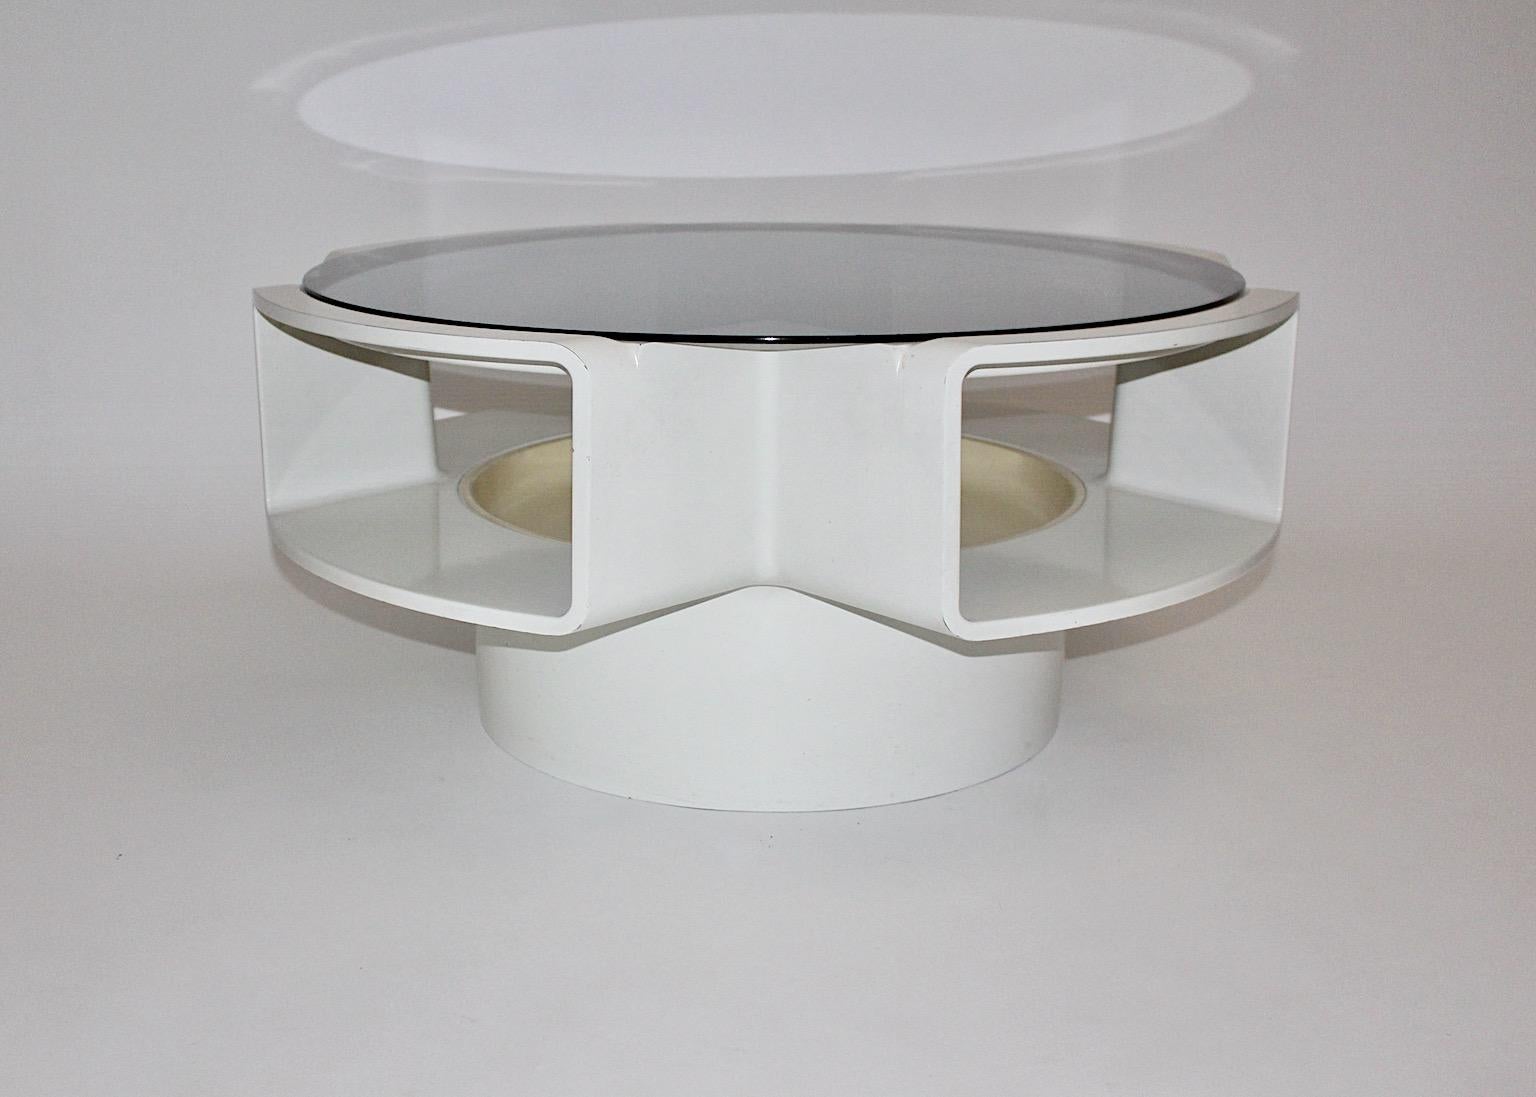 Table basse ou table de canapé en plastique blanc vintage de l'ère spatiale conçue dans les années 1960.
La table basse de l'ère spatiale a été conçue et fabriquée à l'époque de l'alunissage. À cette époque, les gens aimaient les designs et les